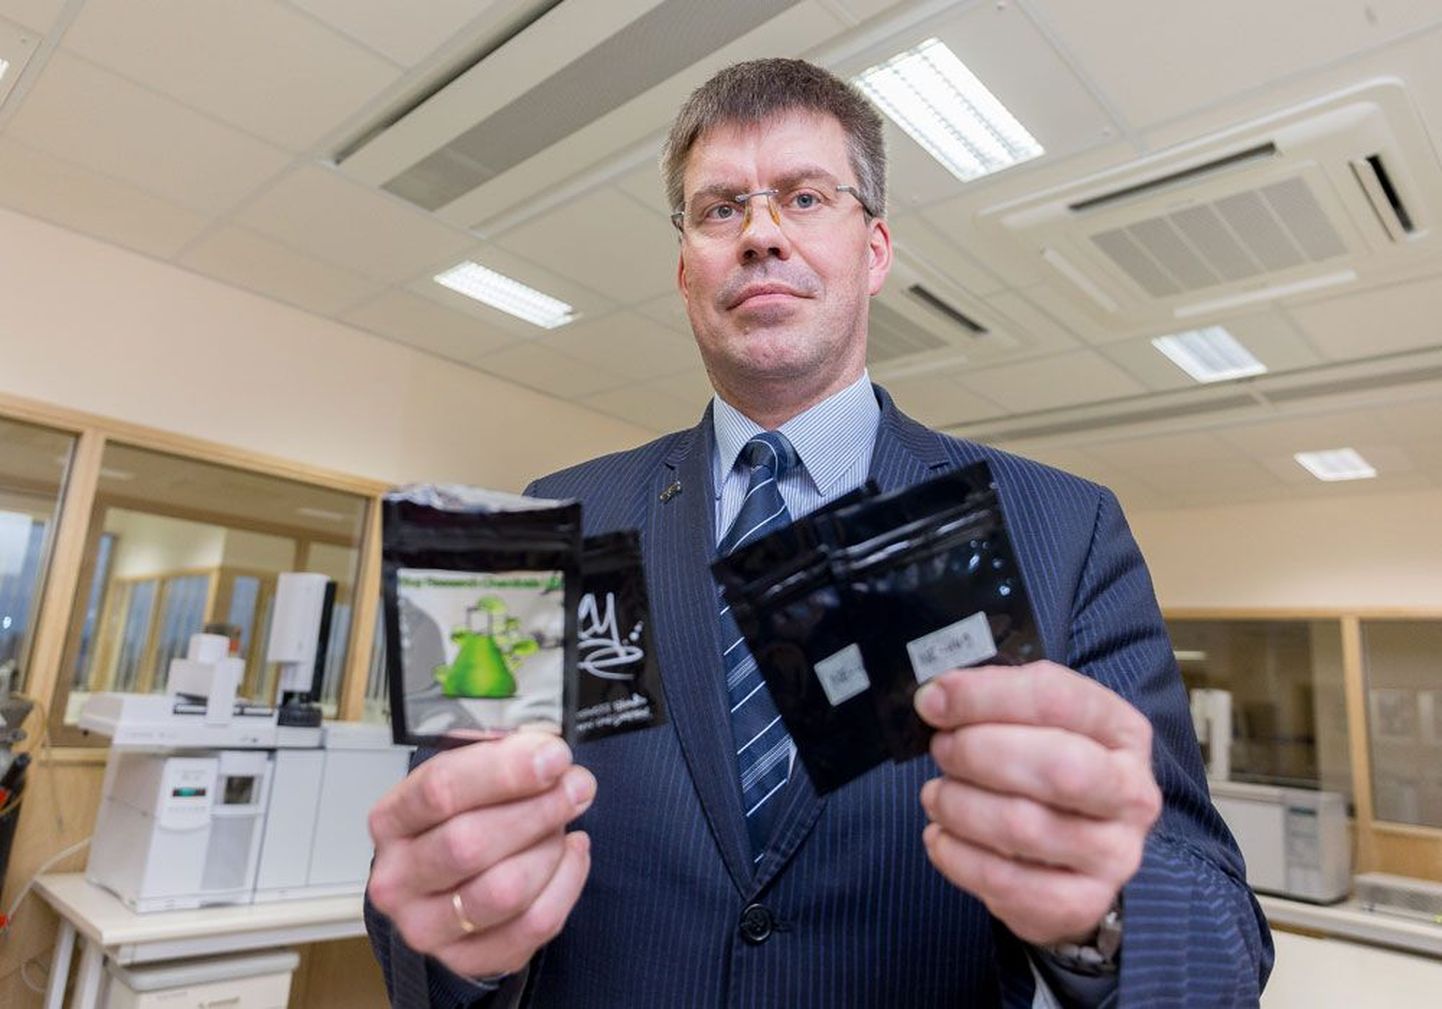 Директор Эстонского института судебной экспертизы Юллар Ланно демонстрирует упаковки, содержащие различные синтетические вещества, весьма опасные для человека.